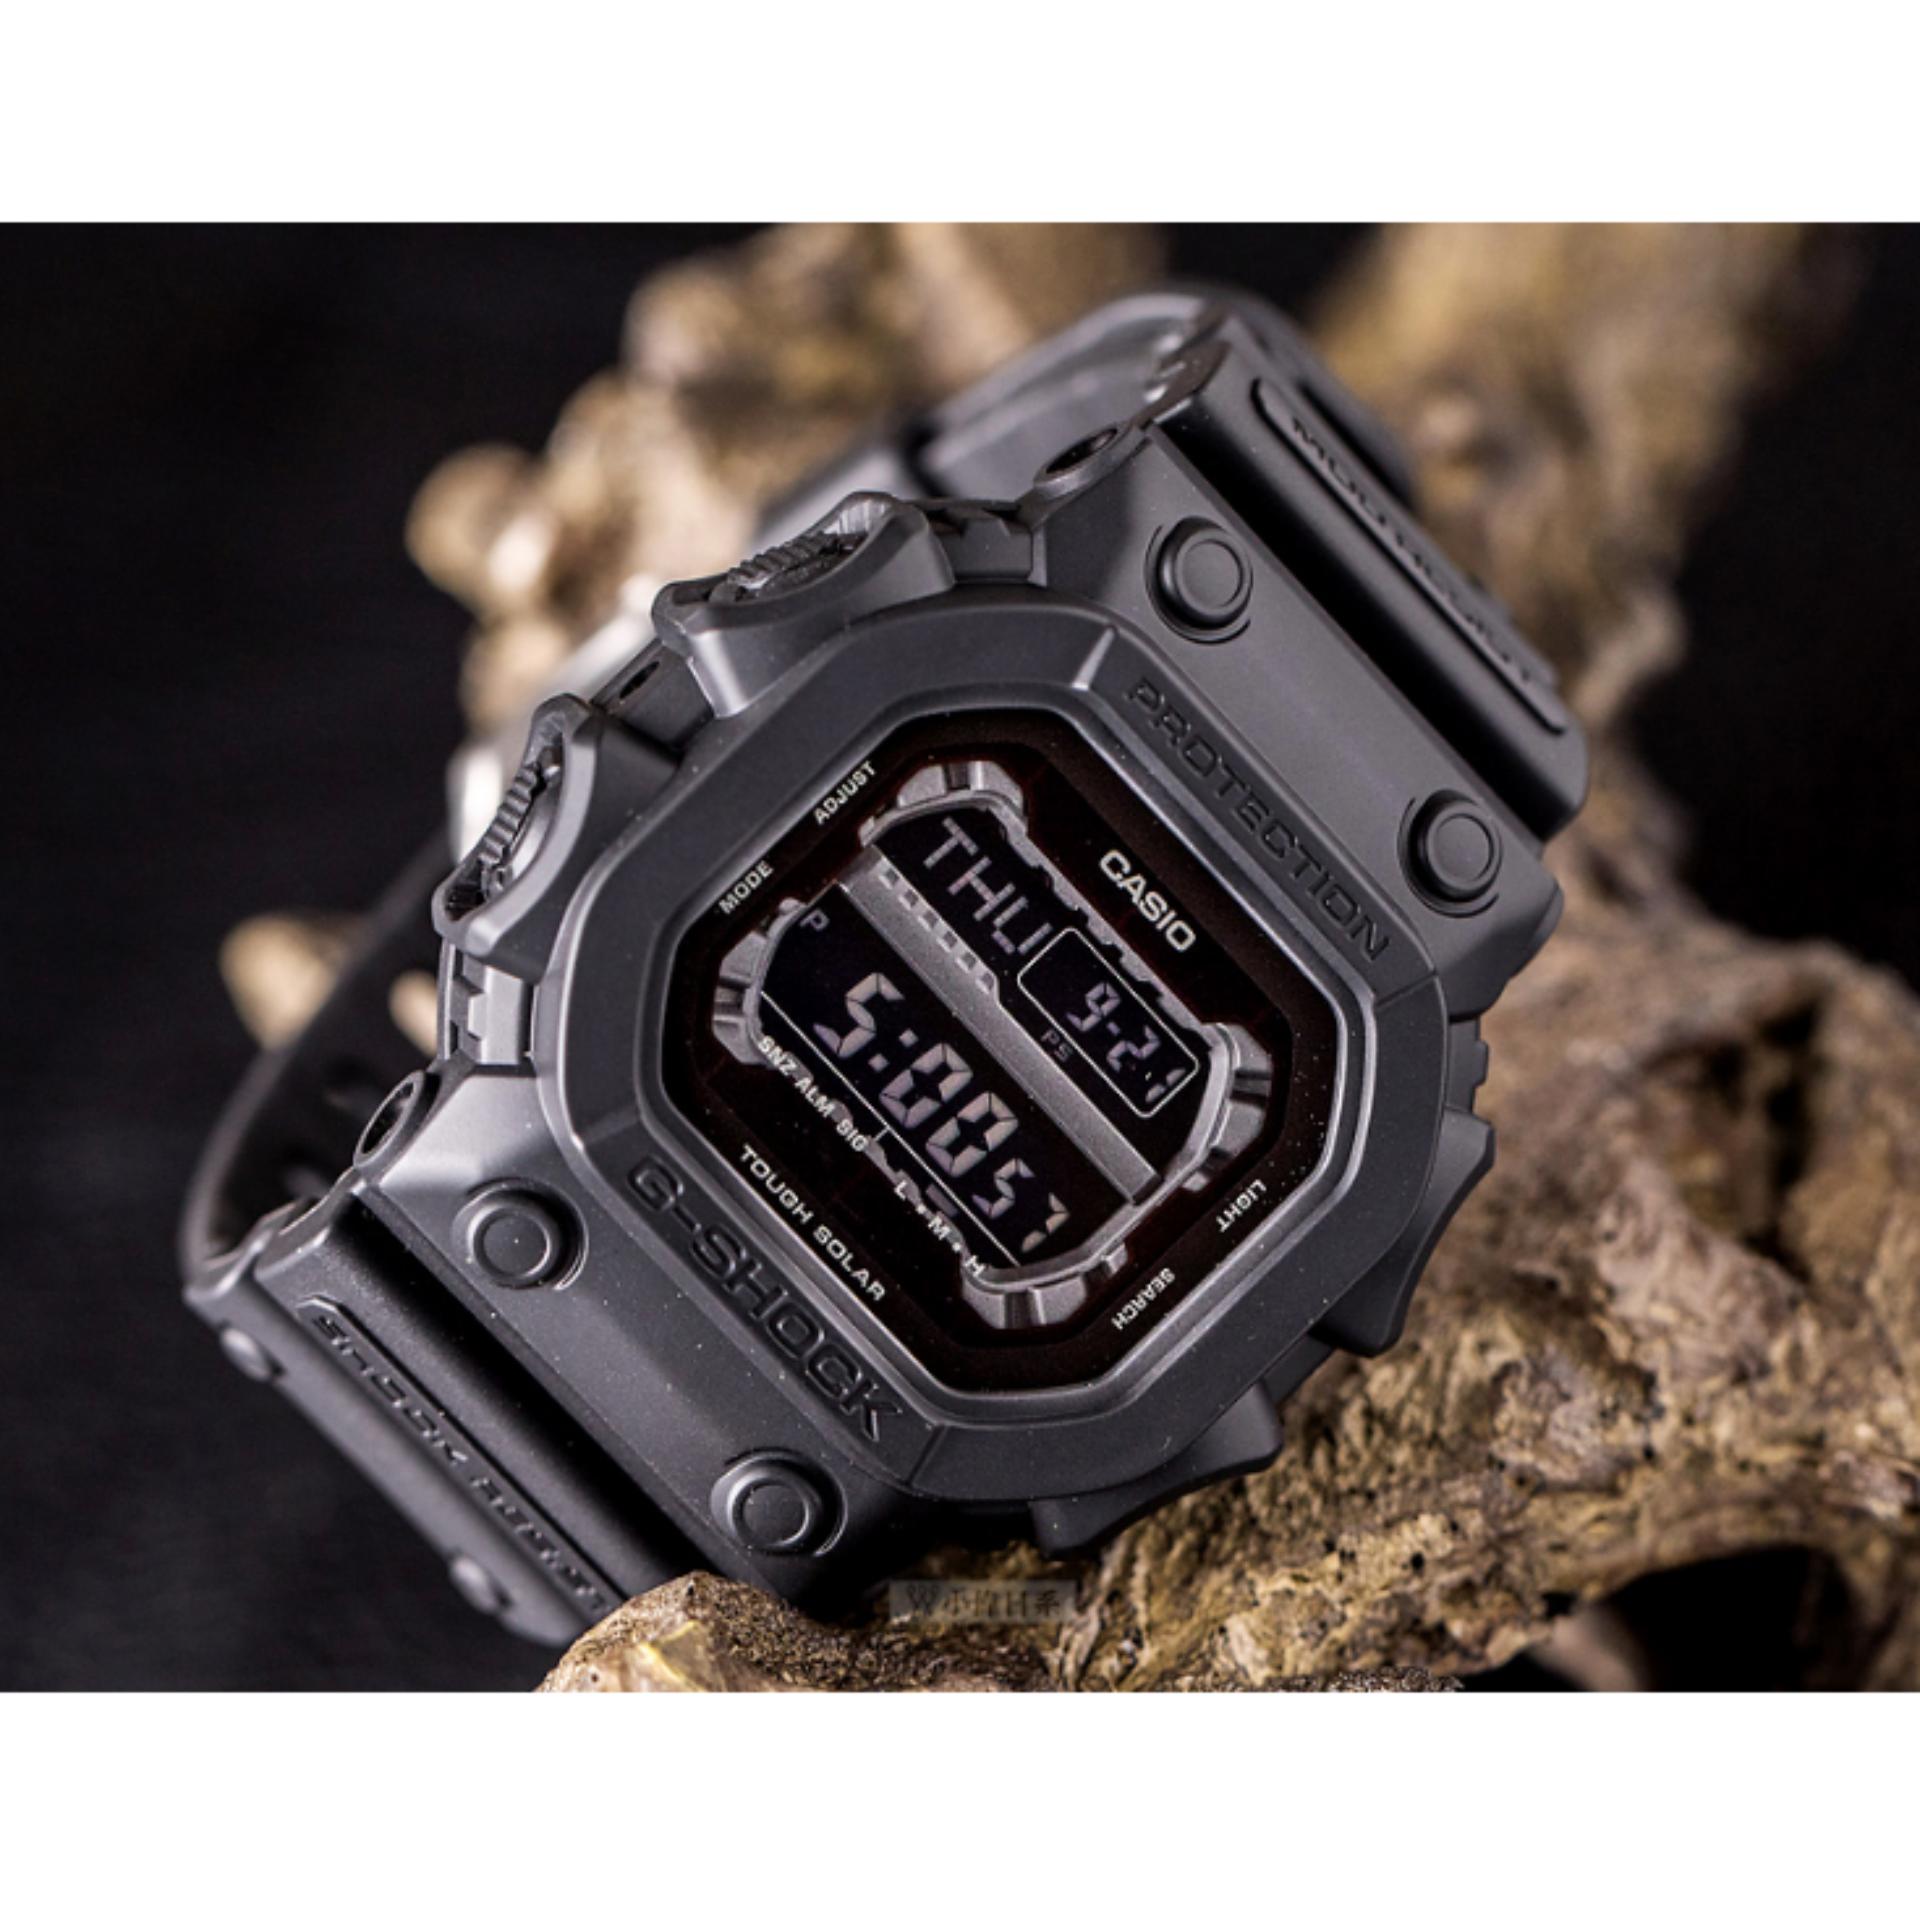 นาฬิกา รุ่น Casio G-Shock นาฬิกาข้อมือ นาฬิกาผู้ชาย สายเรซิ่น รุ่น Limited Edition GX-56BB-1DR // GX-56BB GX-56 สีดำ/ GWX-56-1 ( GXW-56-1 ) สีดำแดง ประกันศูนย์เซ็นทรัลCMG 1 ปี จากร้าน MIN WATCH